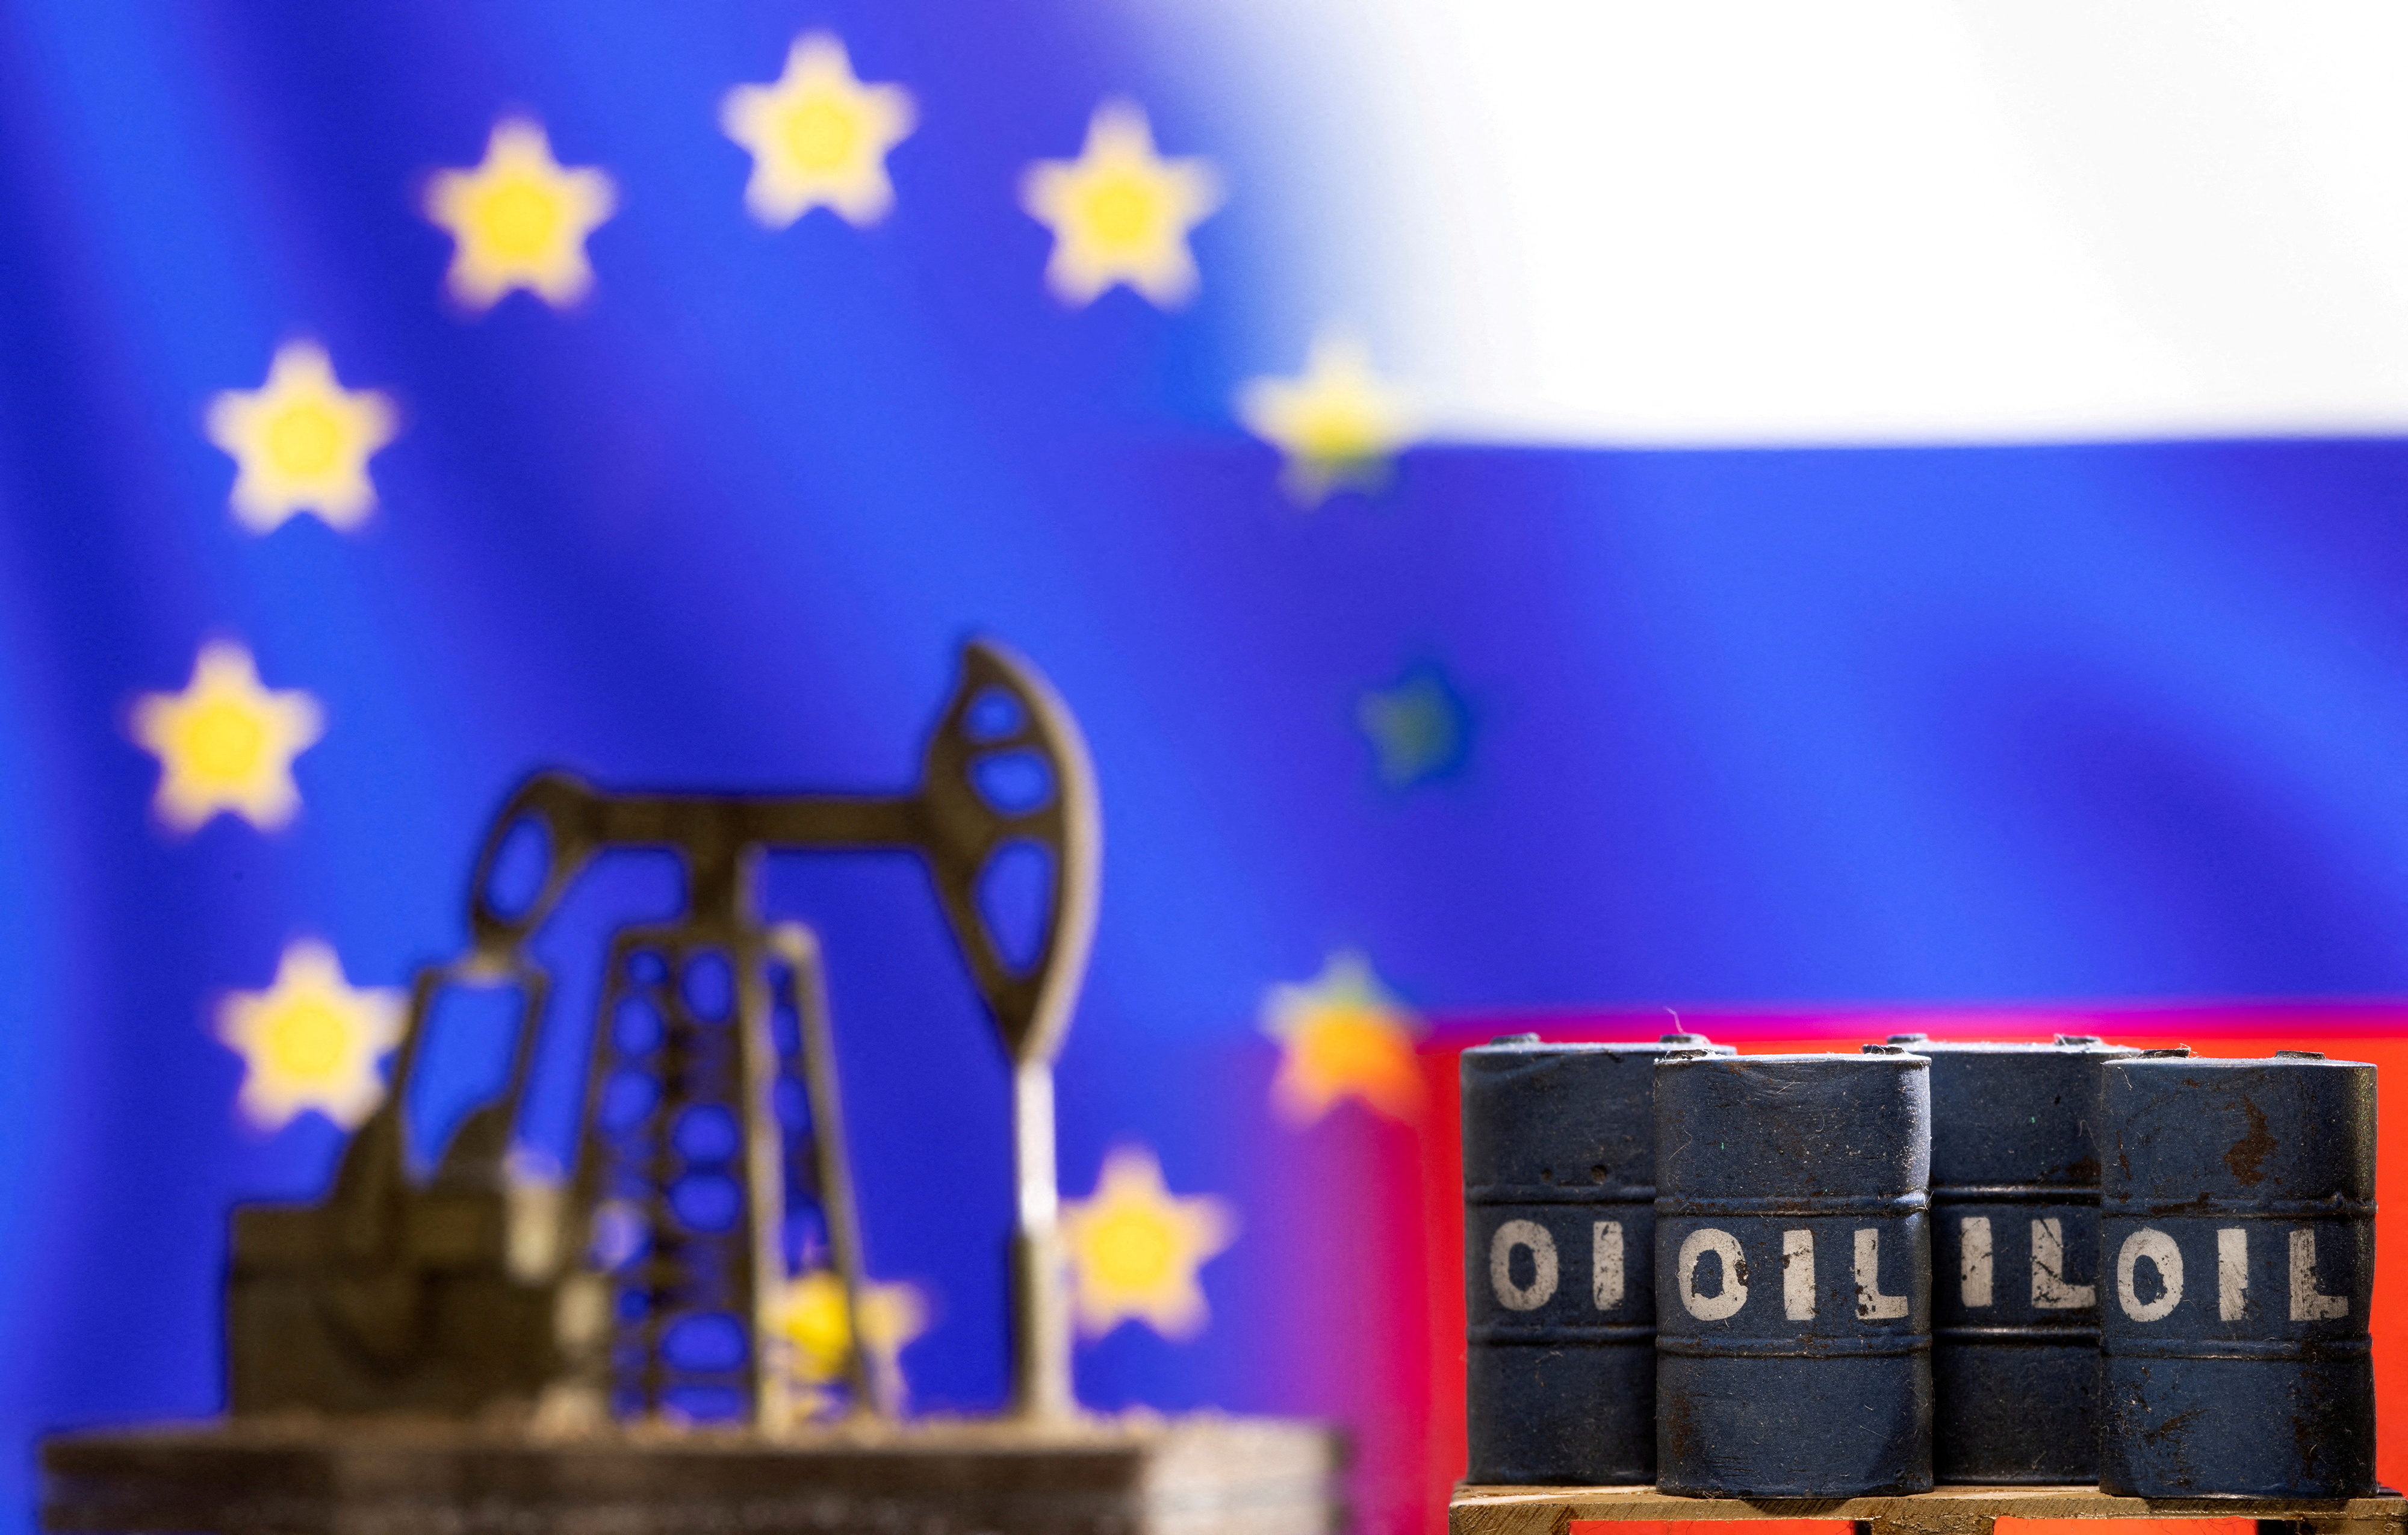 EU summit unlikely to find solution on Russia oil embargo, von der Leyen says | Reuters